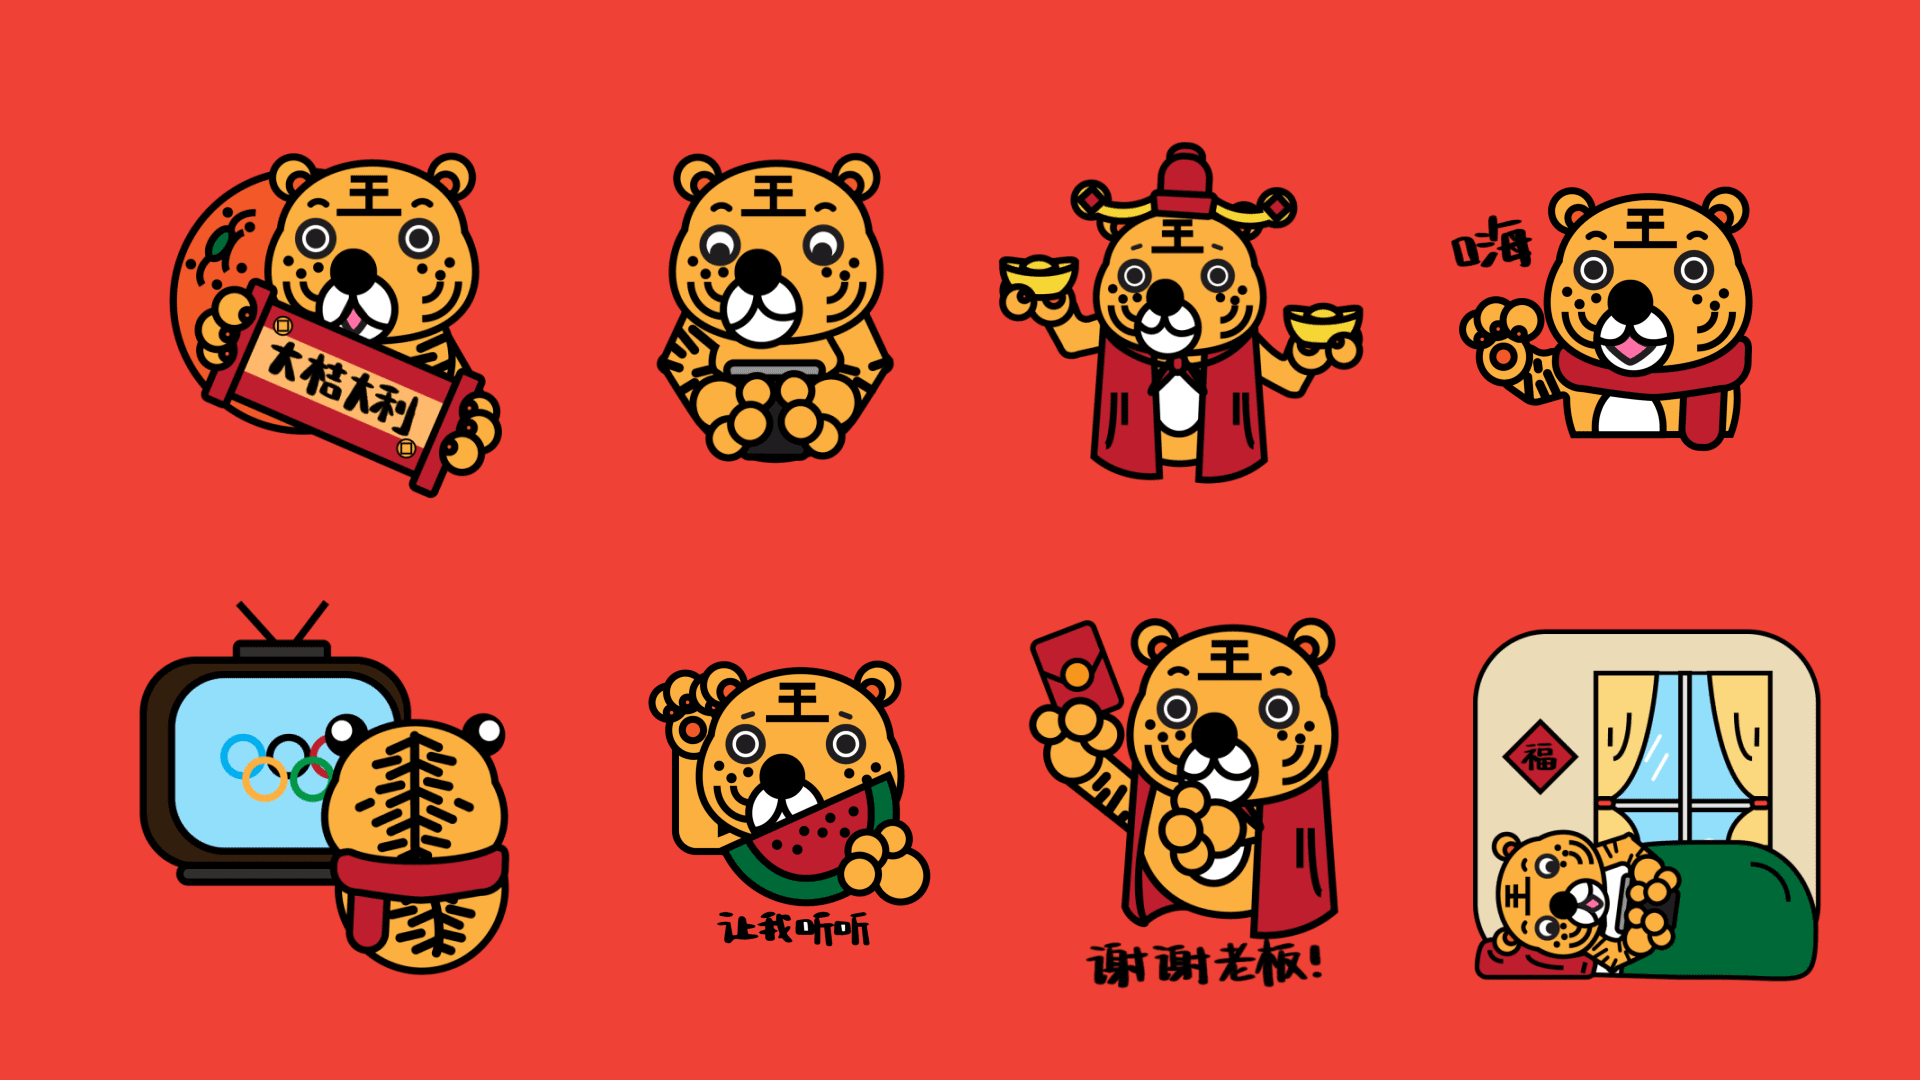 Wonderful Tiger Emoji & AR Design